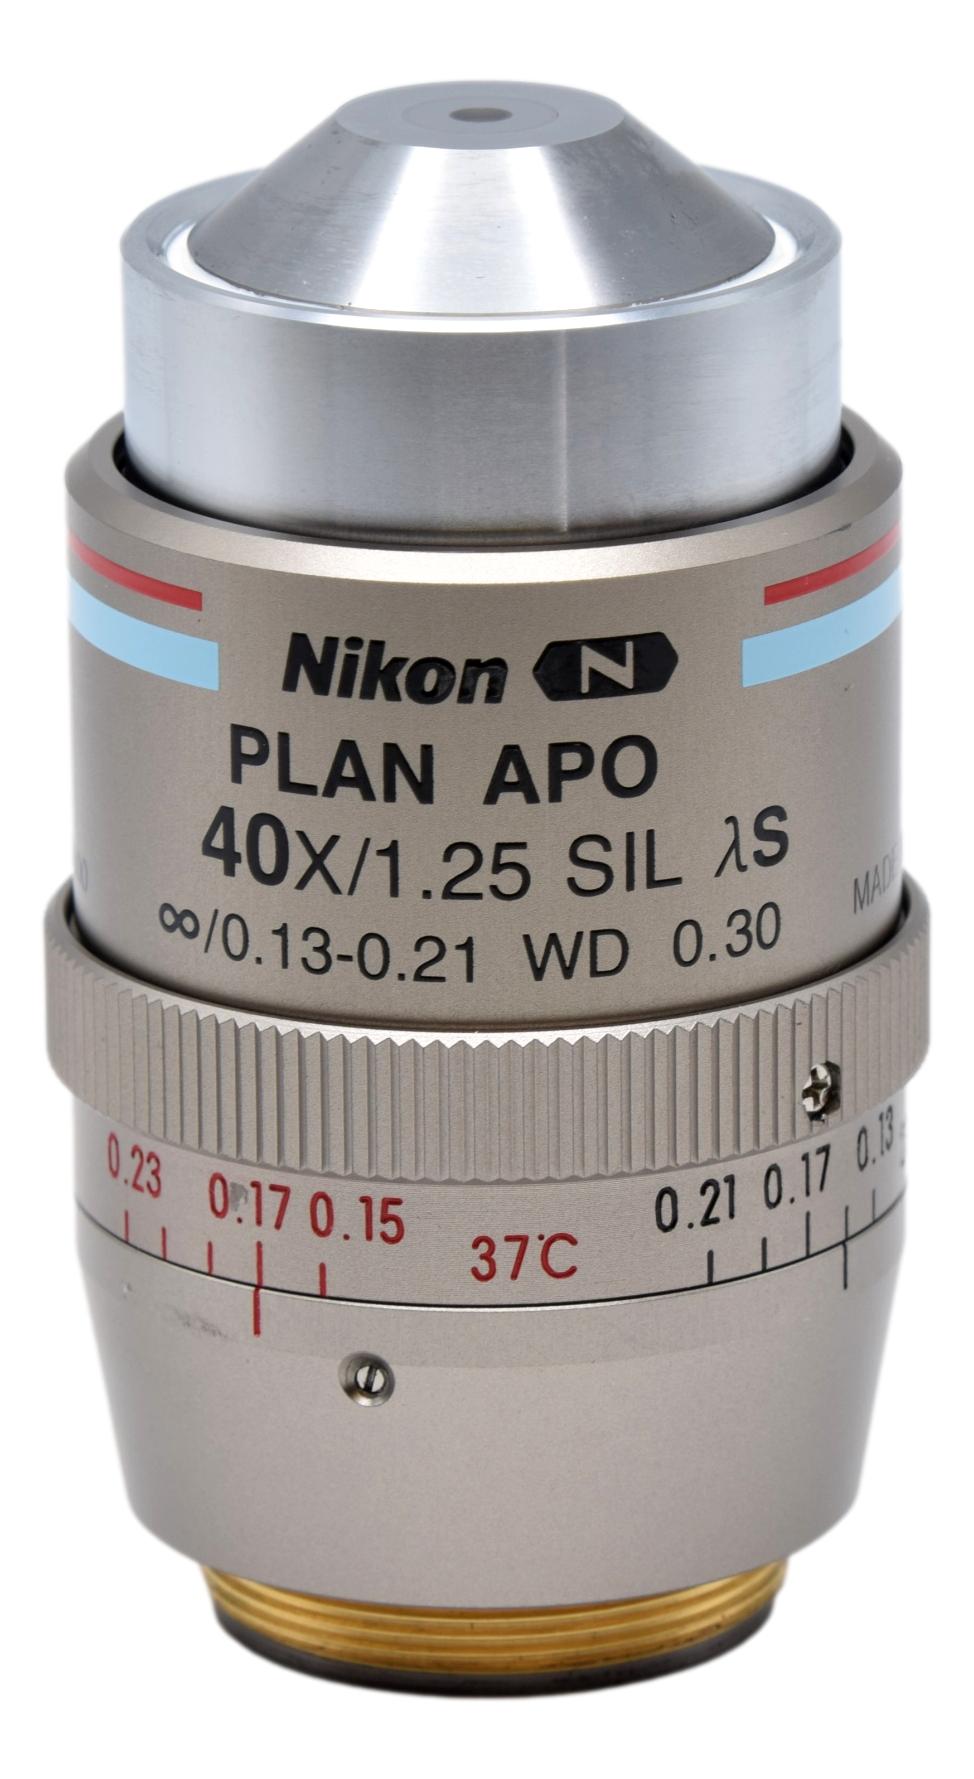 Nikon Plan APO 40x SIL Silicone Microscope Objective